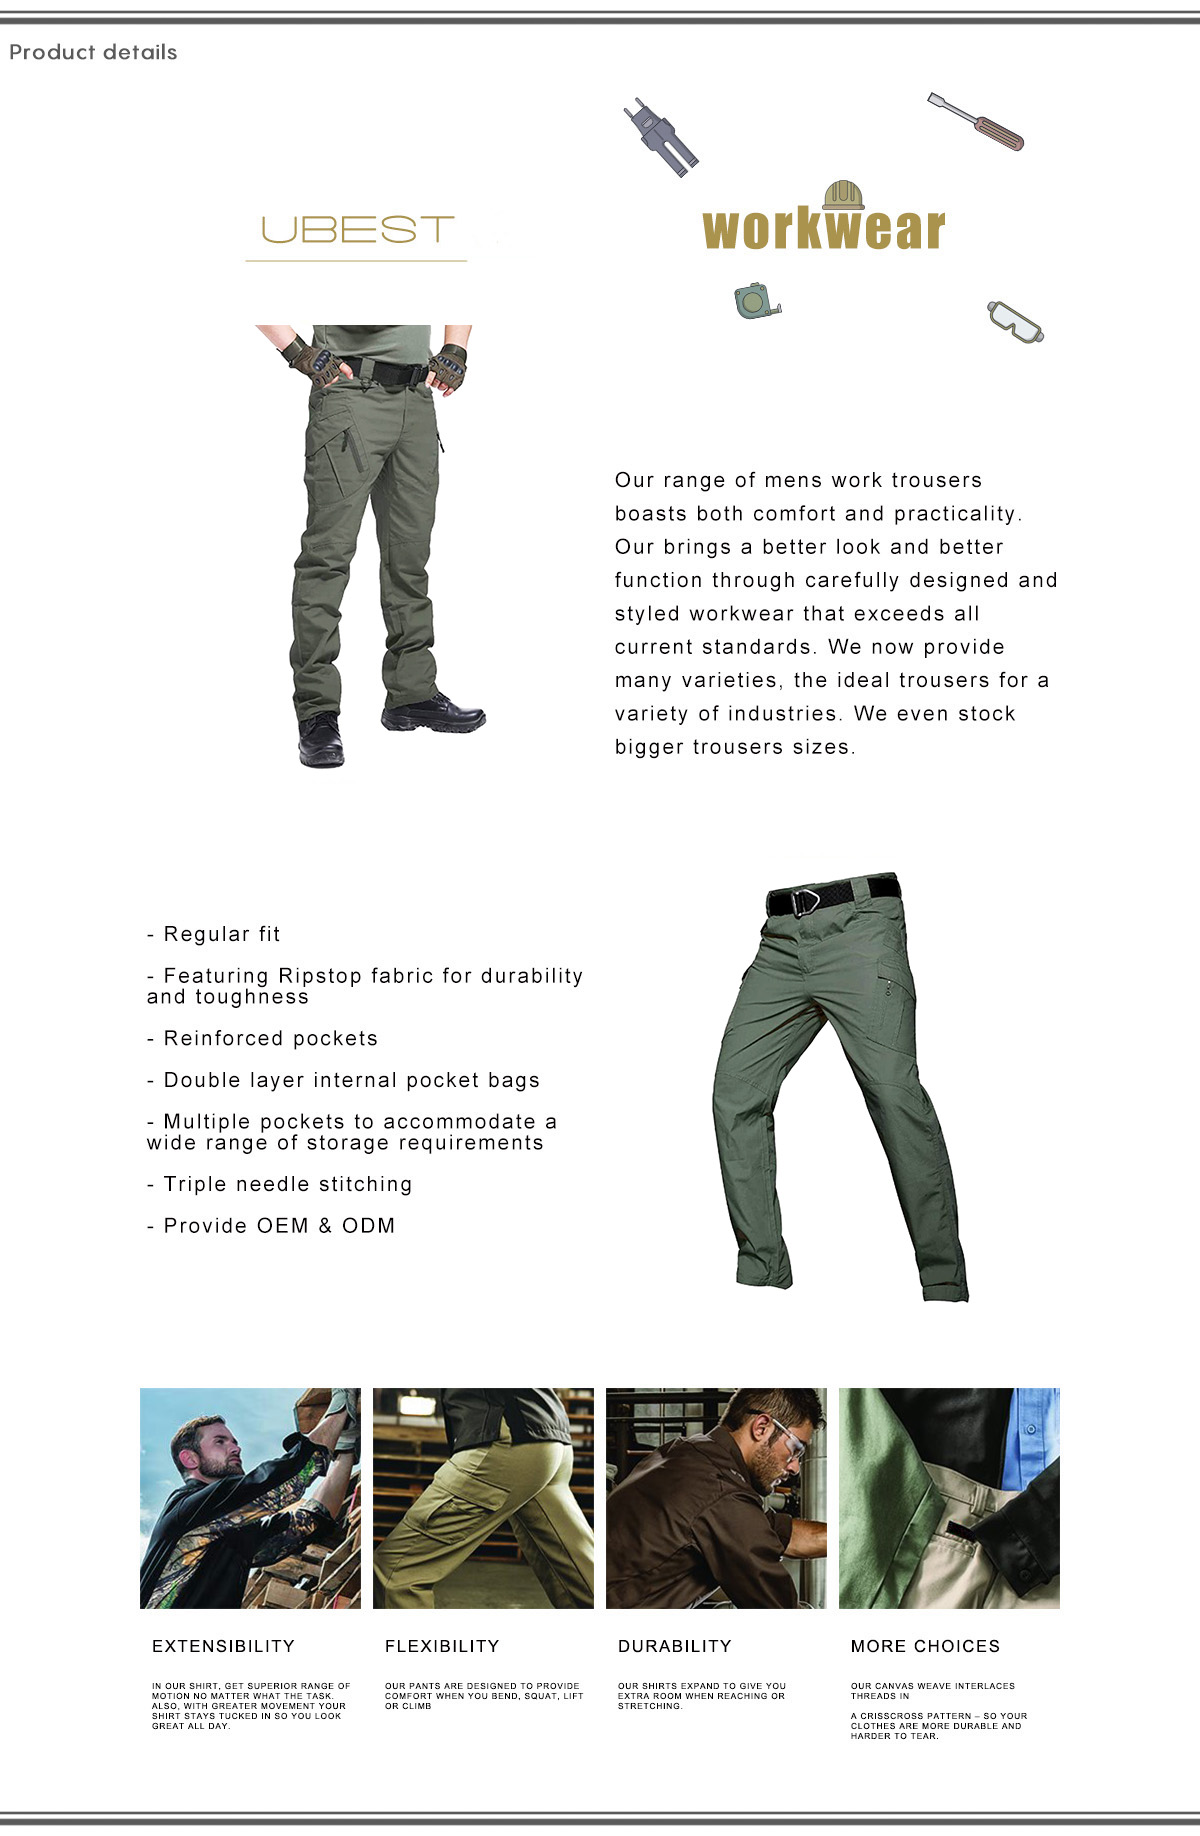 Dark Green Cargo Pants